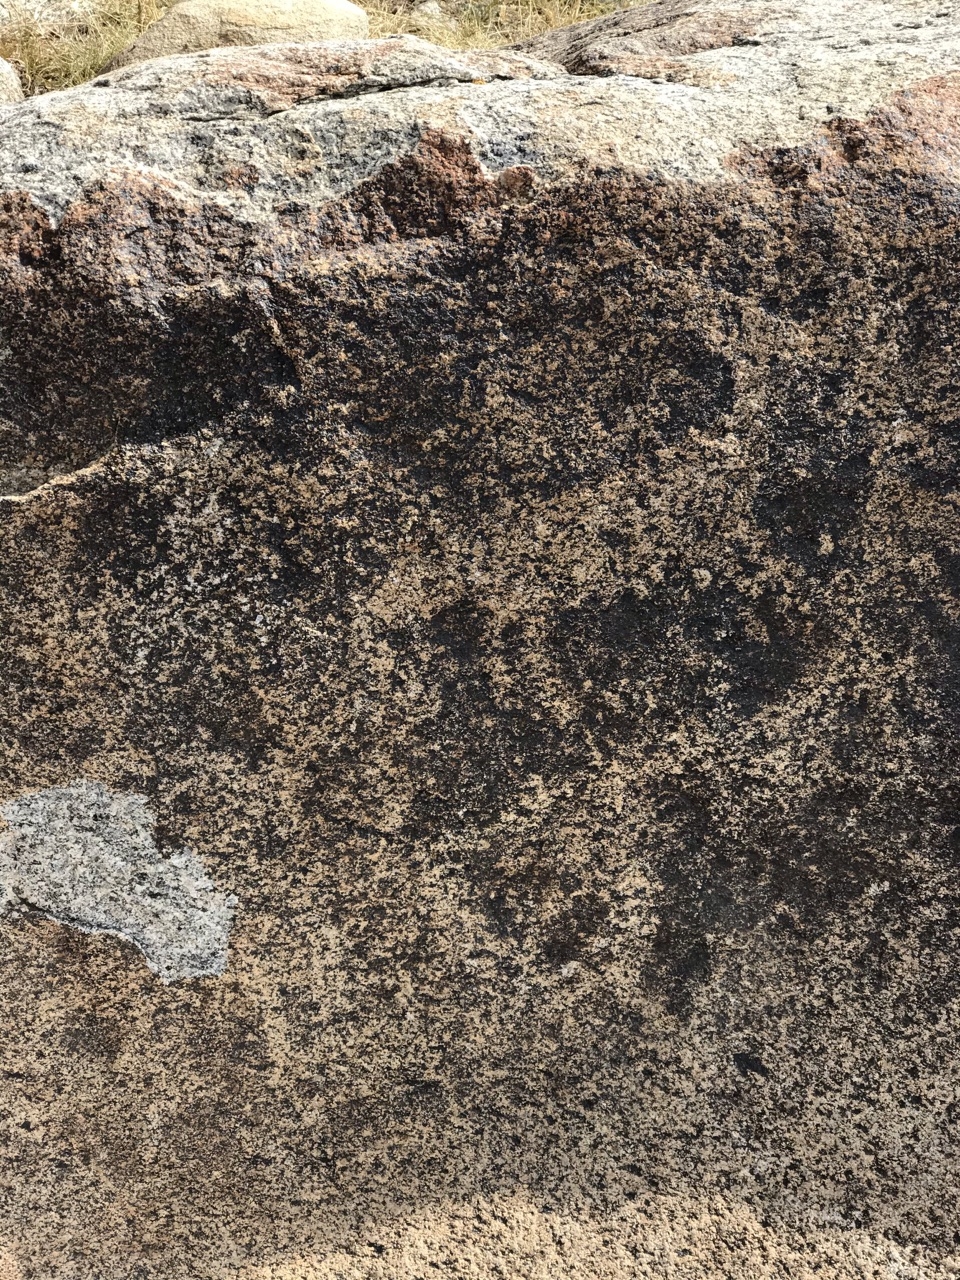 Изображение горных козлов 
VI-X вв. 

На камне изображены горные козлы. Среди всех рисунков выделяется фигура козла в верхней части. Его ноги изображены полностью, морда и хвост детализированы. Часть рисунка подновлена. Чолпон-Ата, Киргизия